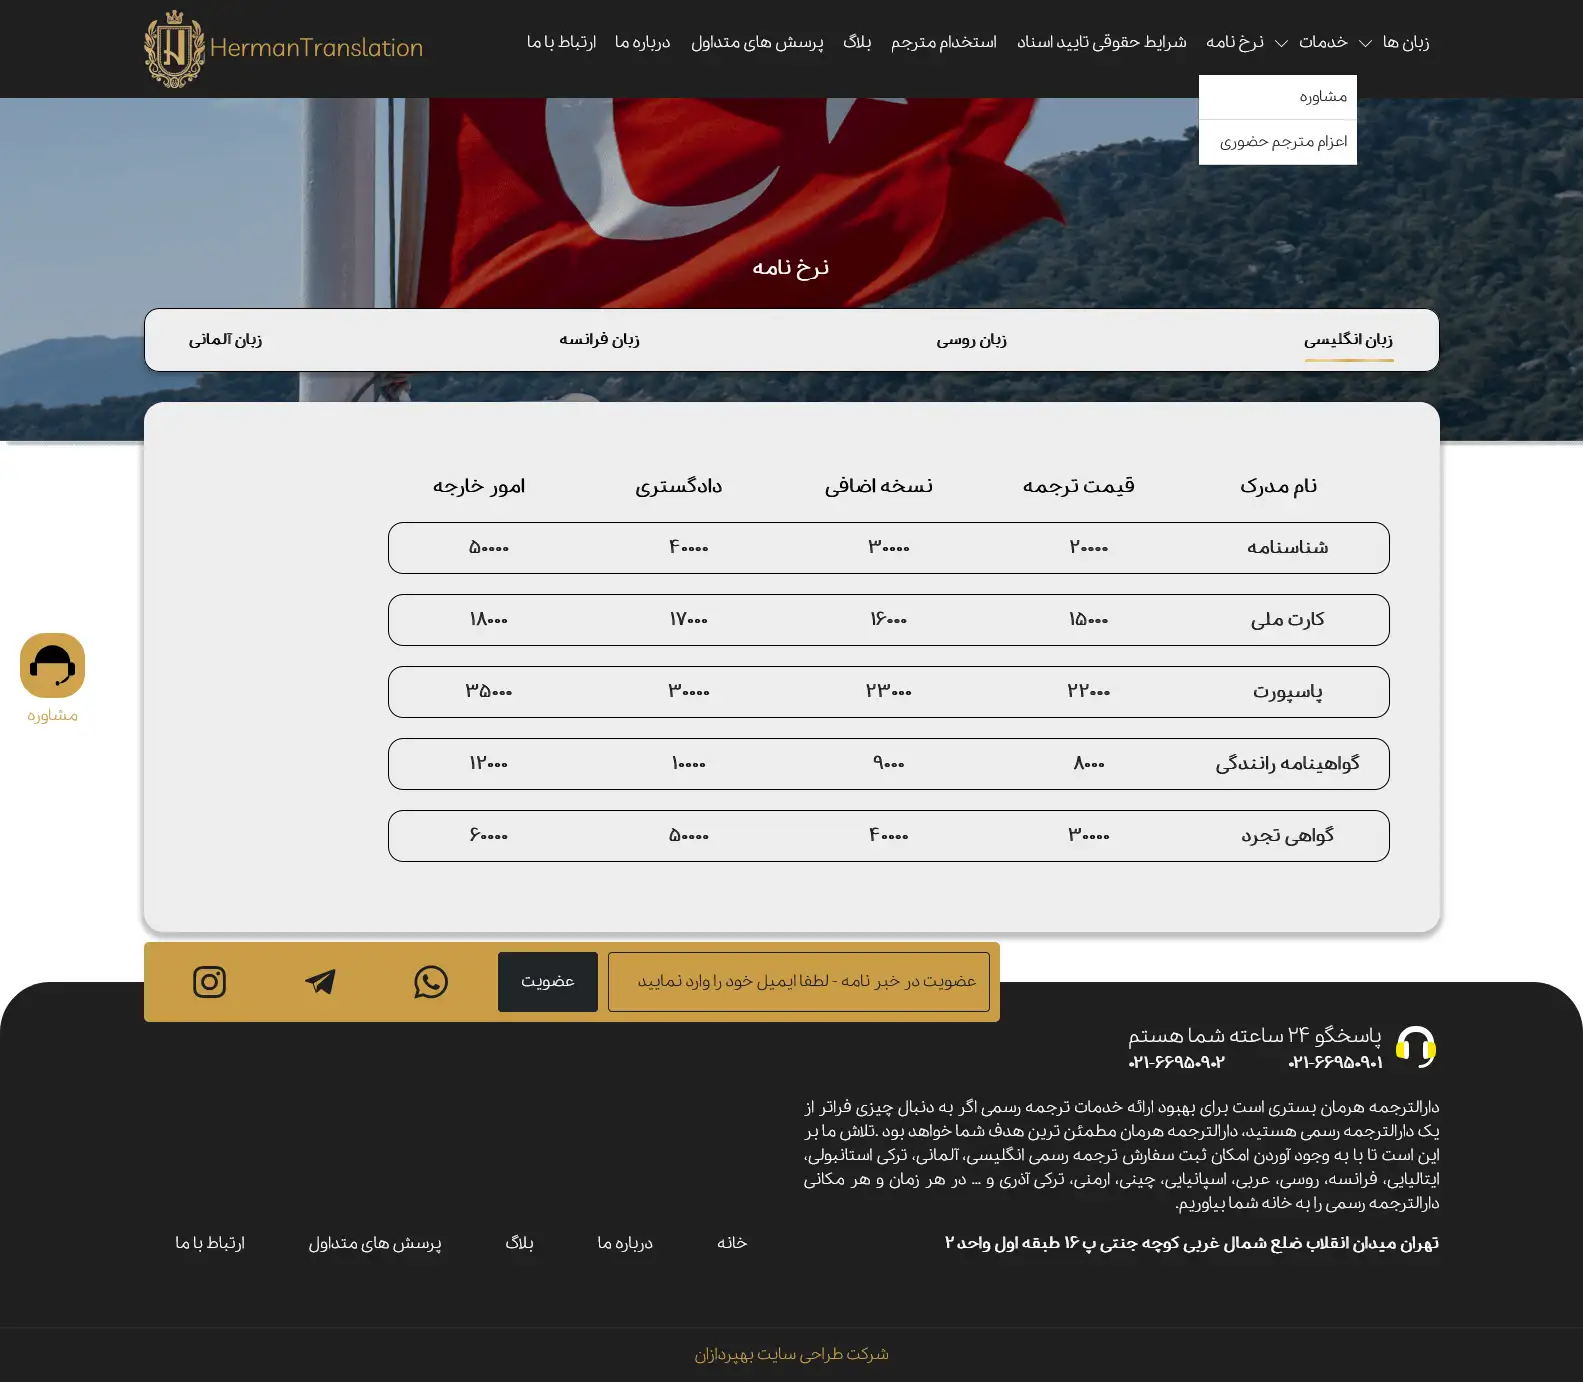 طراحی سایت دارالترجمه رسمی هرمان